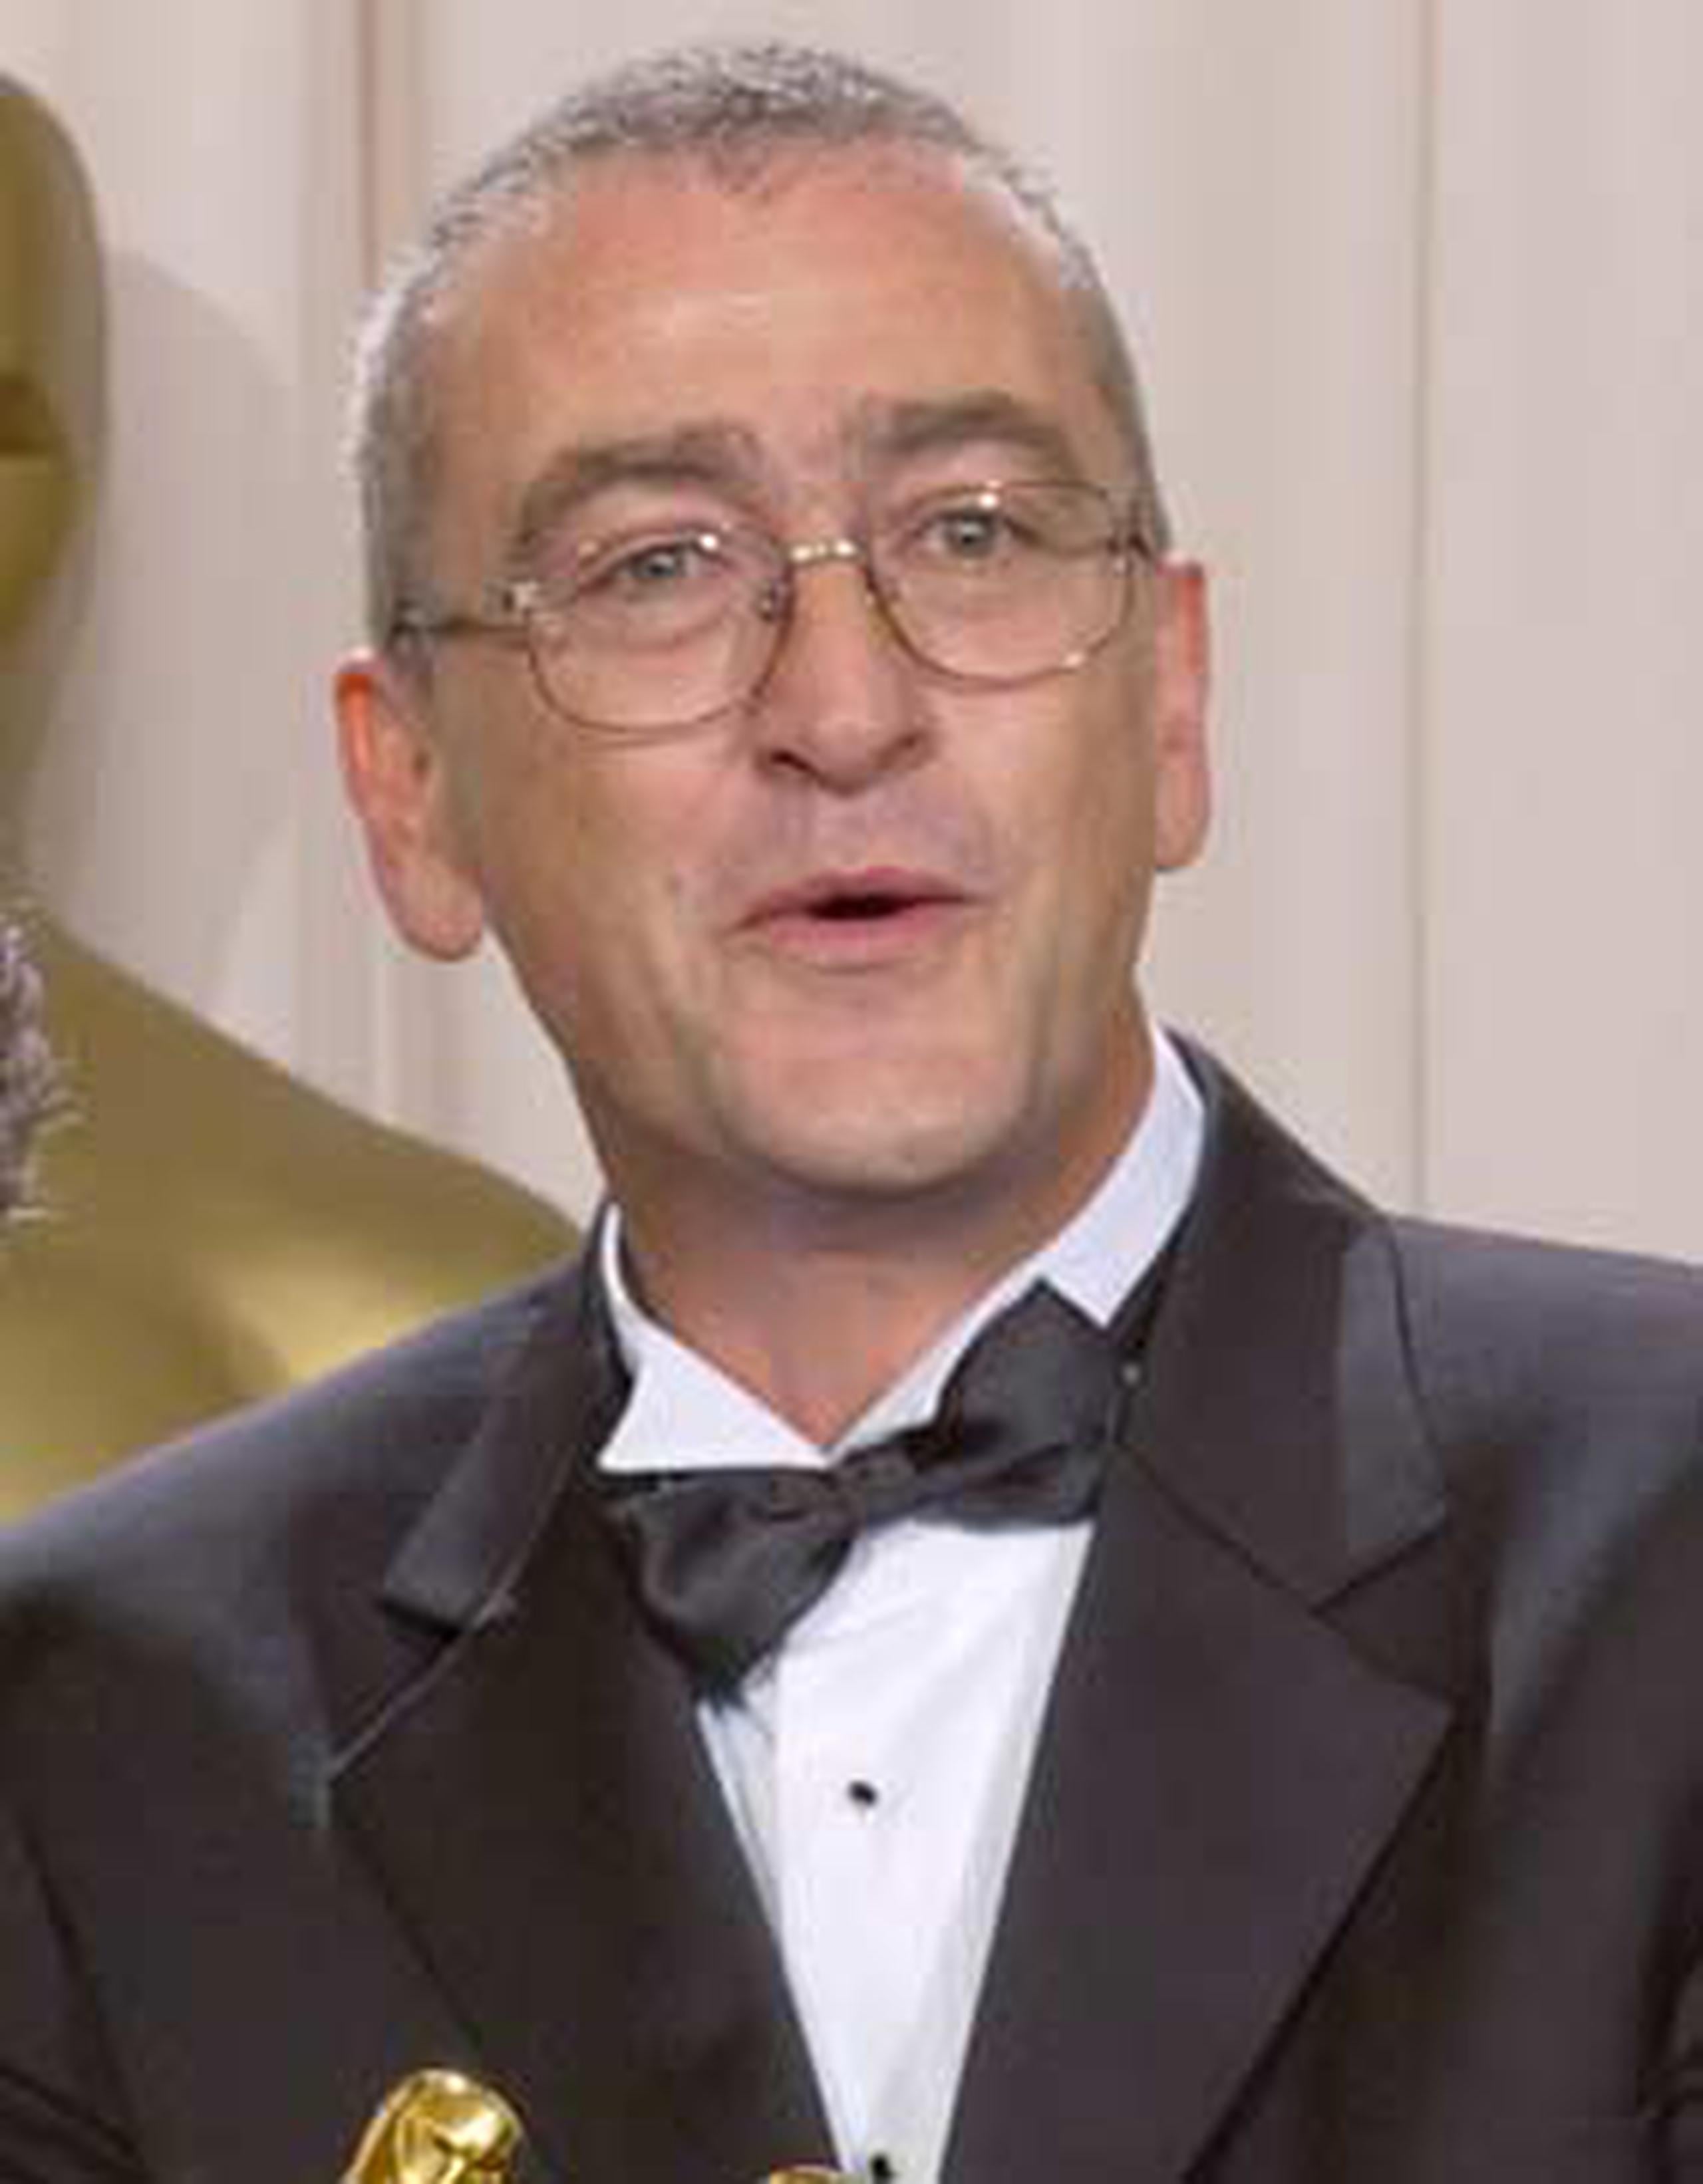 Michael Hopkins recibió dos Oscar, uno en 2003 por su trabajo en "El señor de los anillos: Las dos torres" y otro por la edición de la película "King Kong". (Archivo)